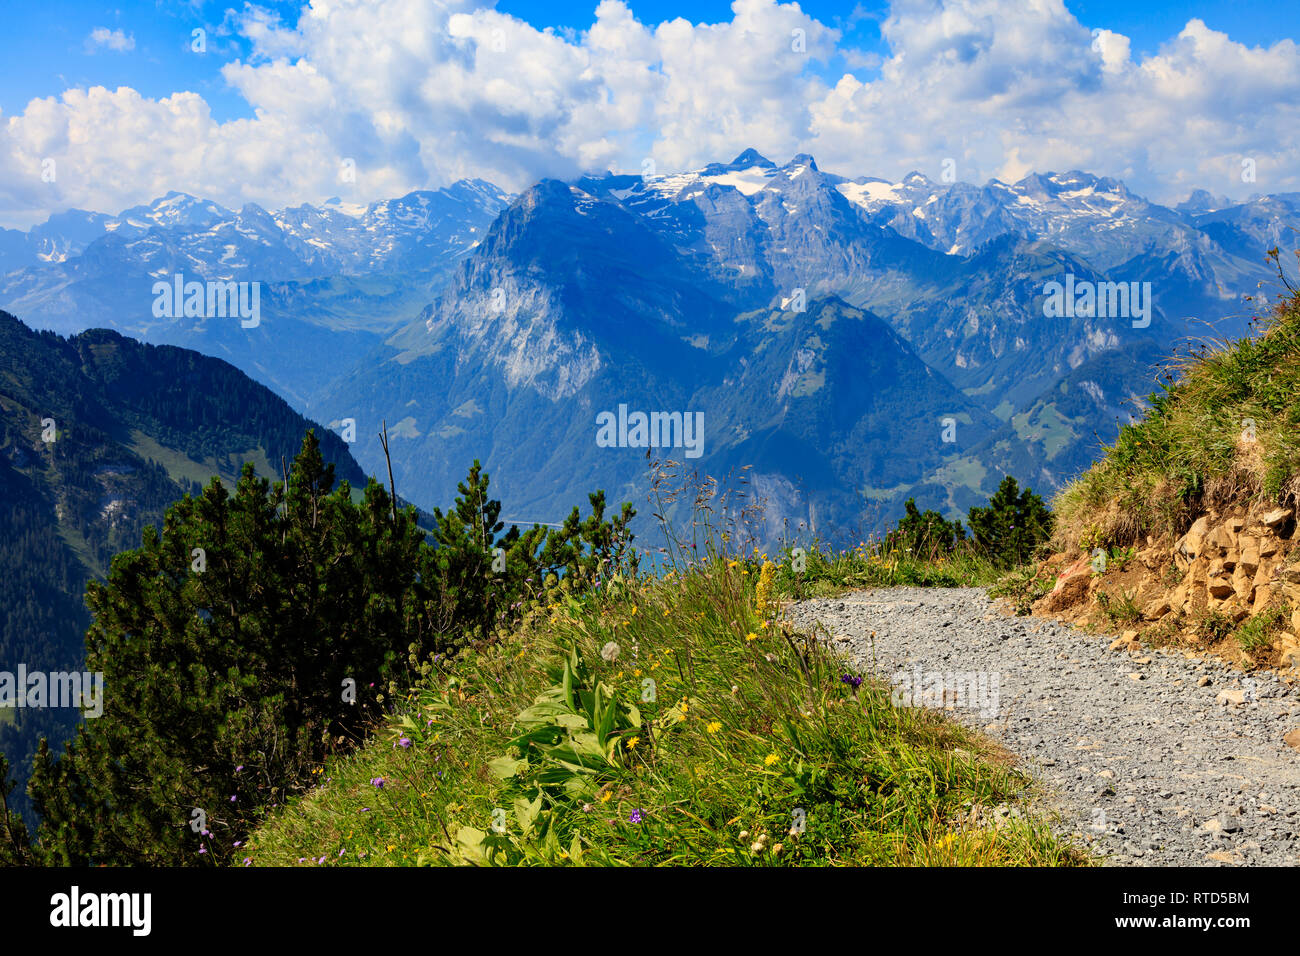 Gehen Sie auf die Spitze des Berges, Blumenwiese und einen Blick auf den See Luzern, im Hintergrund die Berge der Schweiz Stockfoto